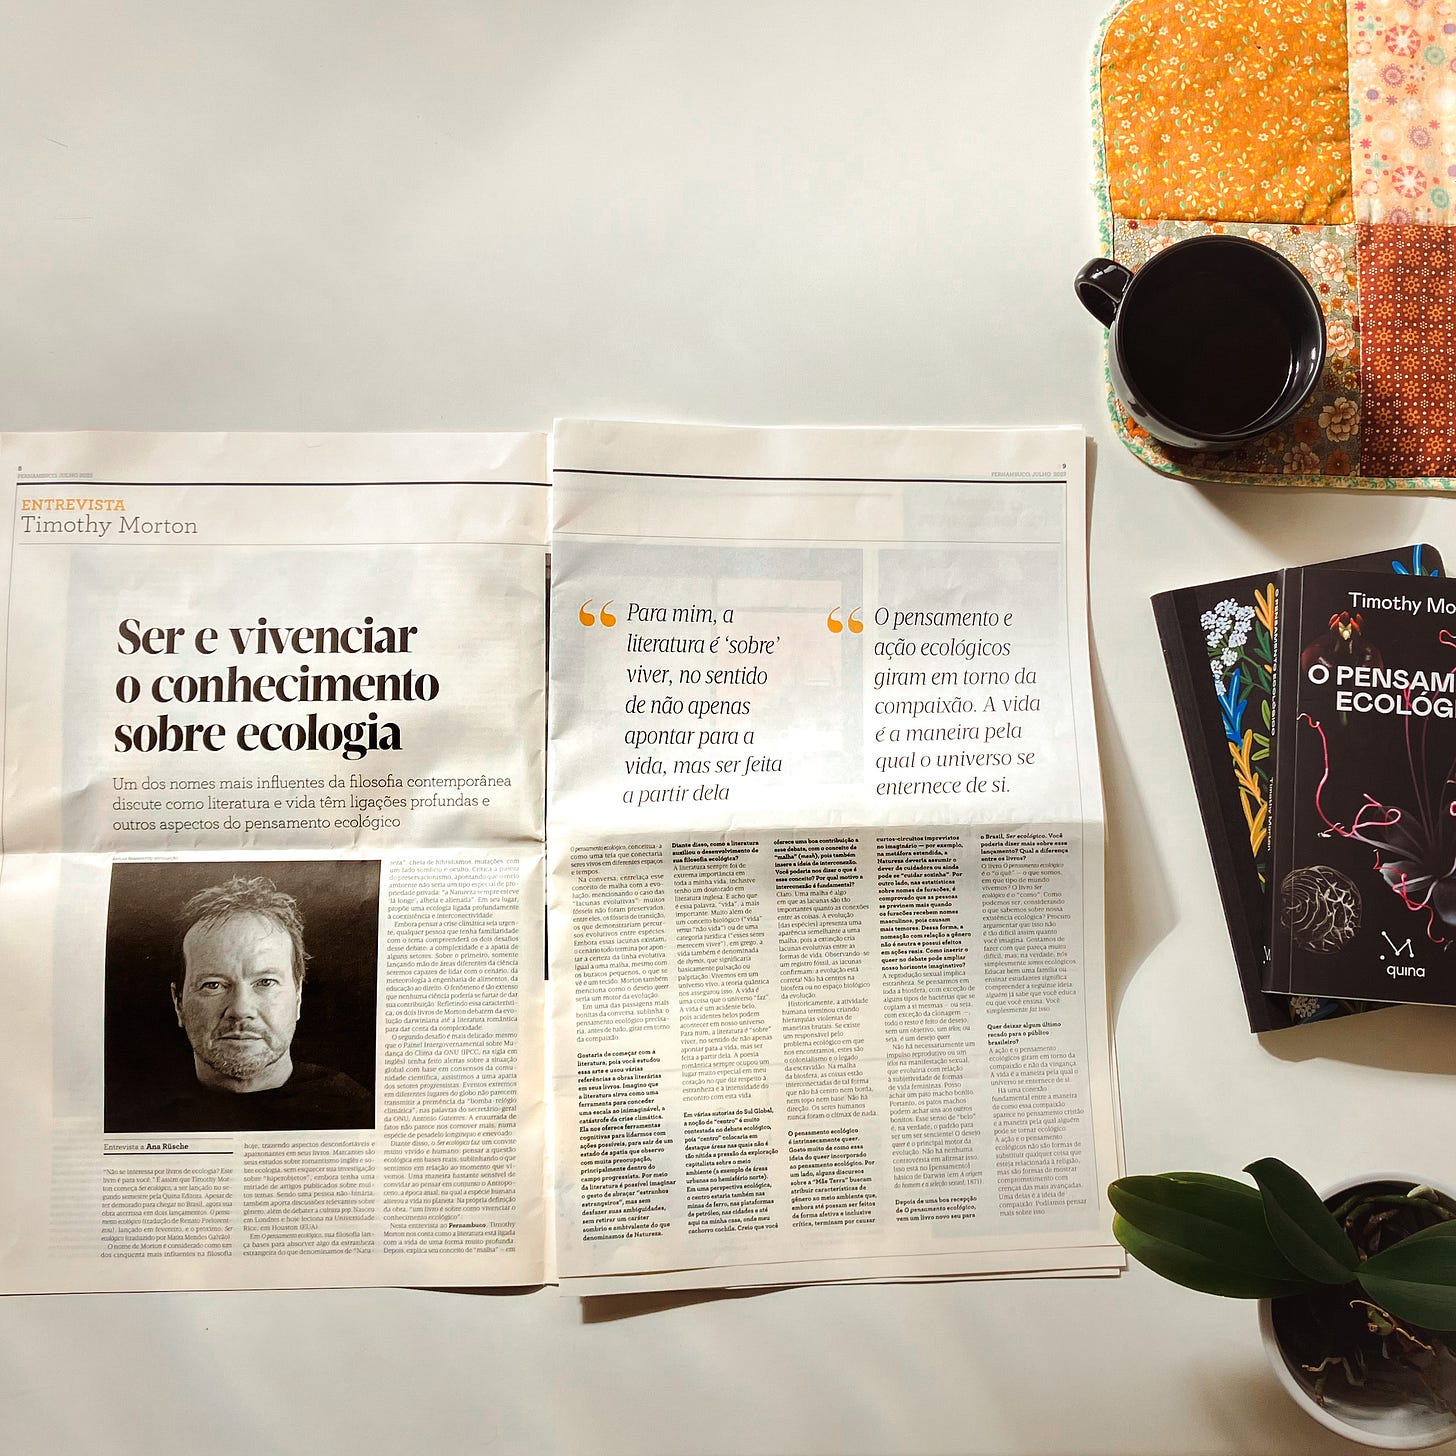 Um jornal aberto ao meio, com uma matéria sobre Timothy Morton, um livro da mesma autoria, um vaso de planta e uma xícara de café.